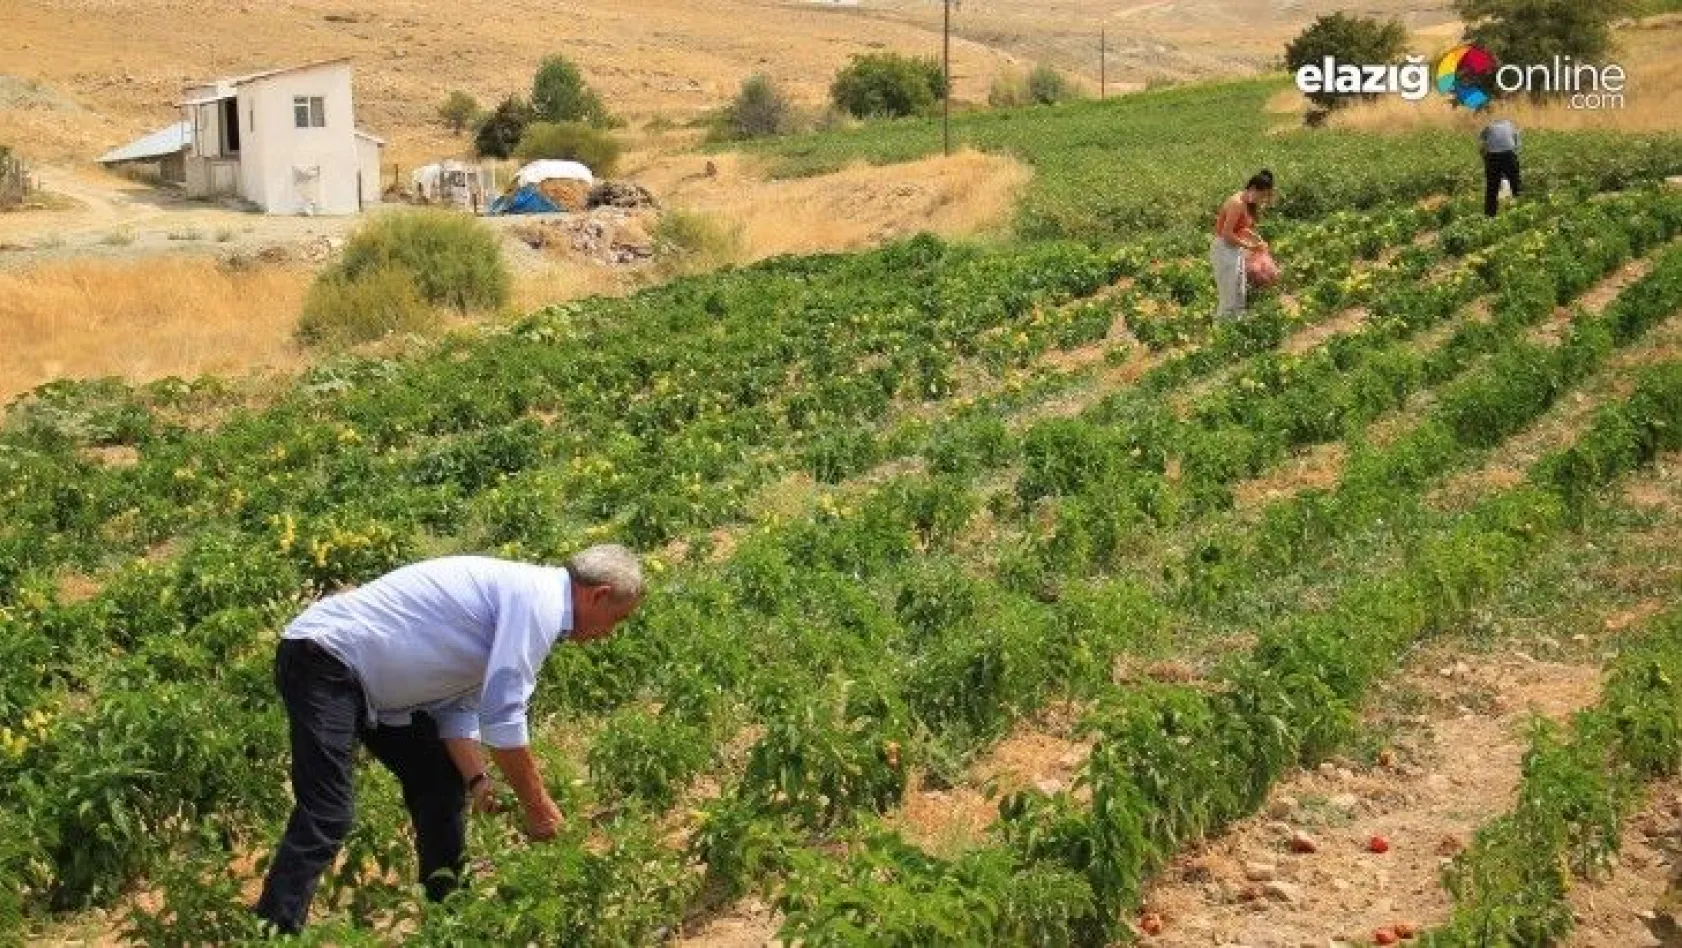 Elazığ'da, müşteriler tarlada kendi sebzesini toplayarak satın alıyor